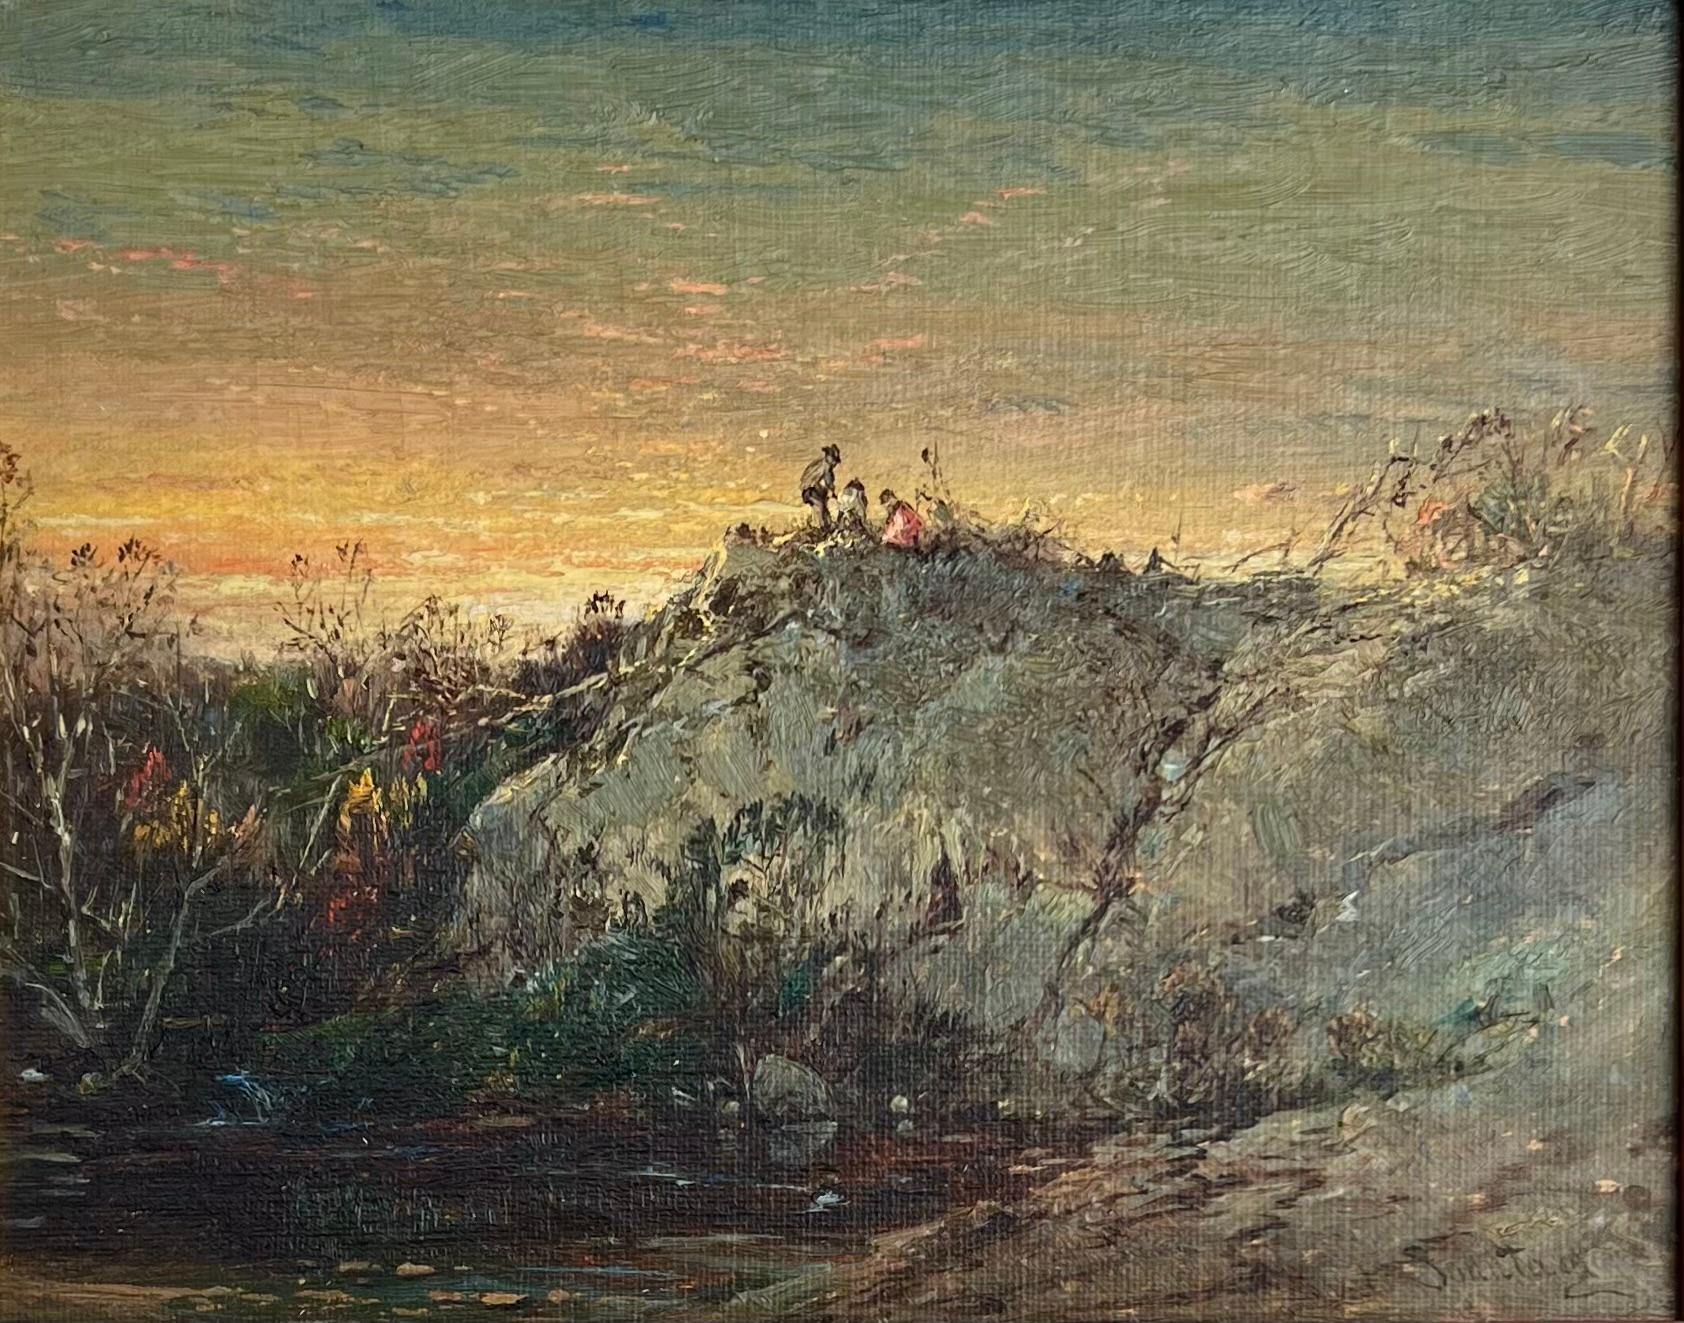 Eine leuchtende Herbstlandschaft in Öl auf Leinwand, wahrscheinlich von den Hügeln im Hudson River Valley, von dem bekannten amerikanischen Künstler William Louis Sonntag (1822-1900).  Signiert unten rechts.

Sonntag wurde in der Nähe von